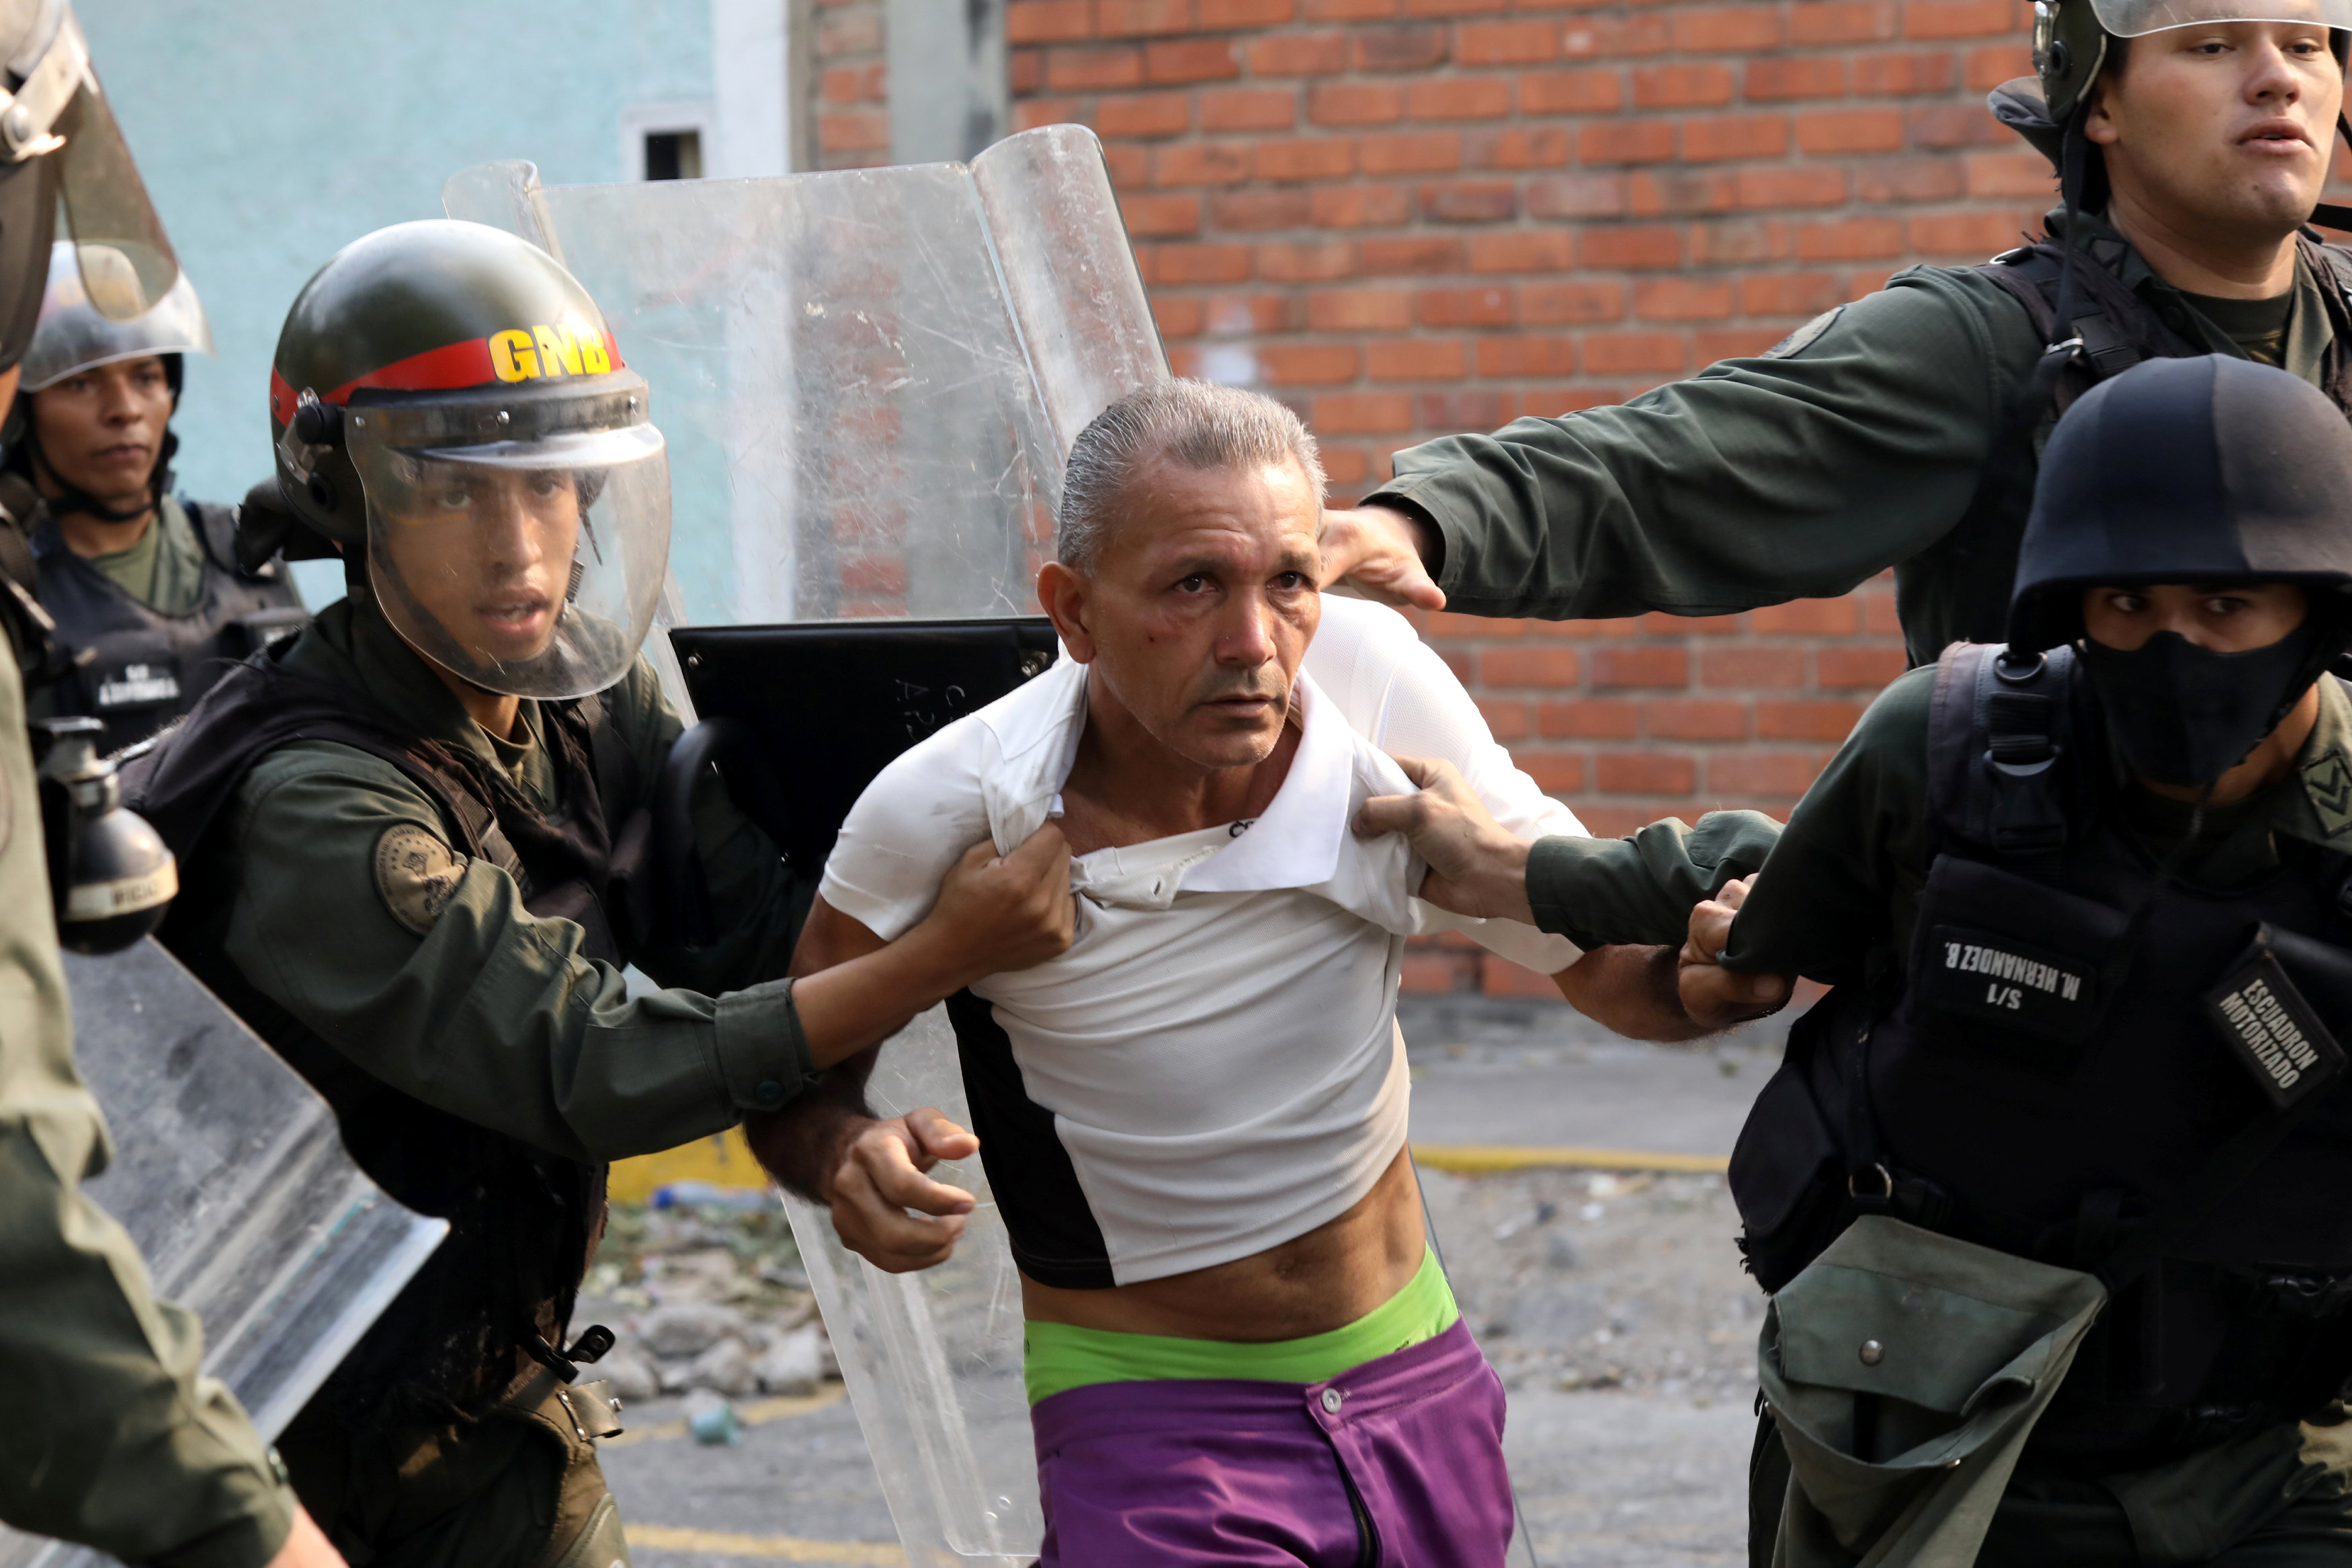 La brutal represión, la resistencia, heridos y quema de ropa de milicianos: FOTOS de Ureña que dan la vuelta al mundo